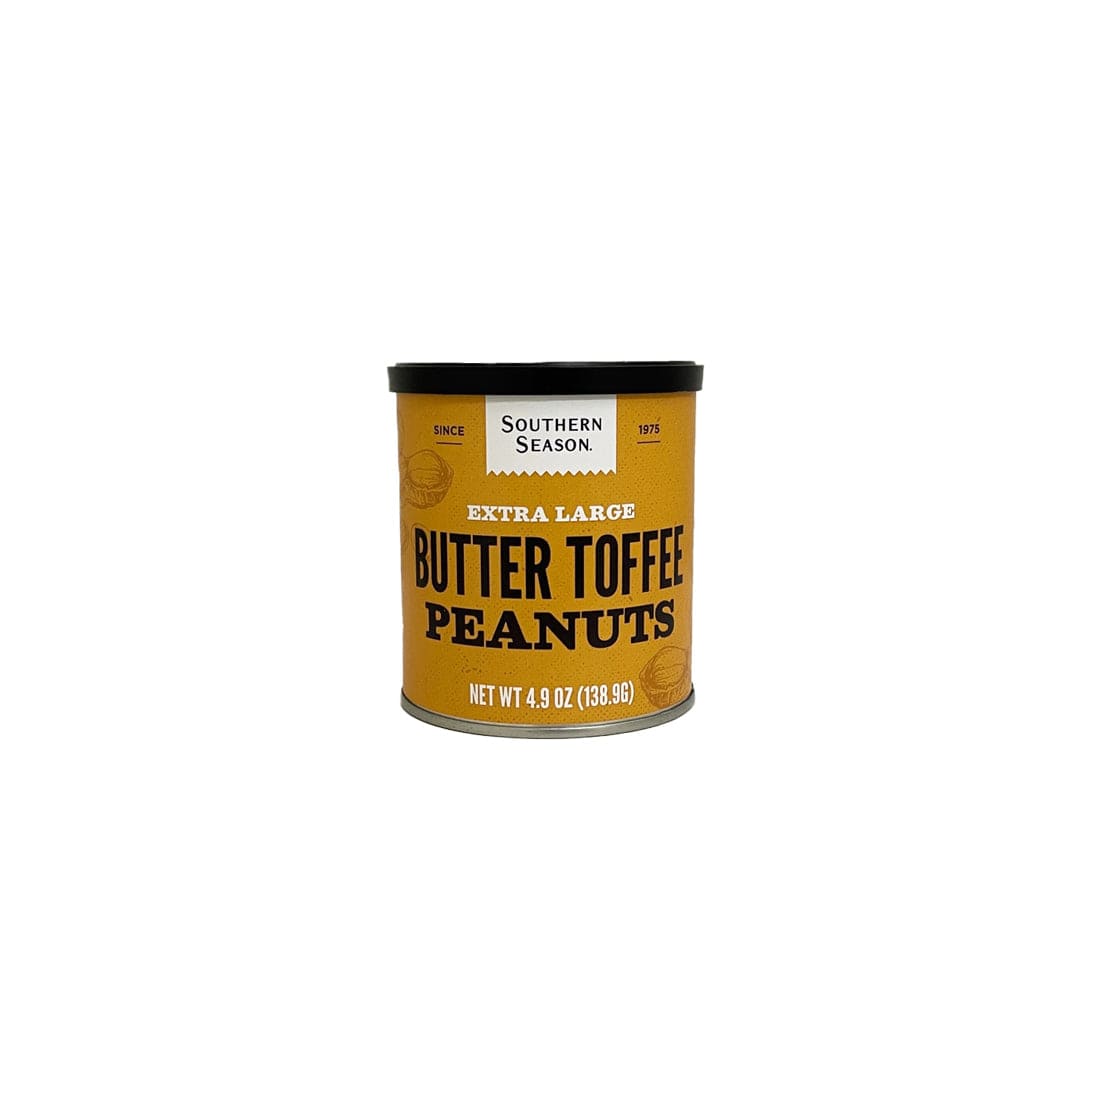 Southern Season Southern Season Butter Toffee Peanuts 4.9 oz